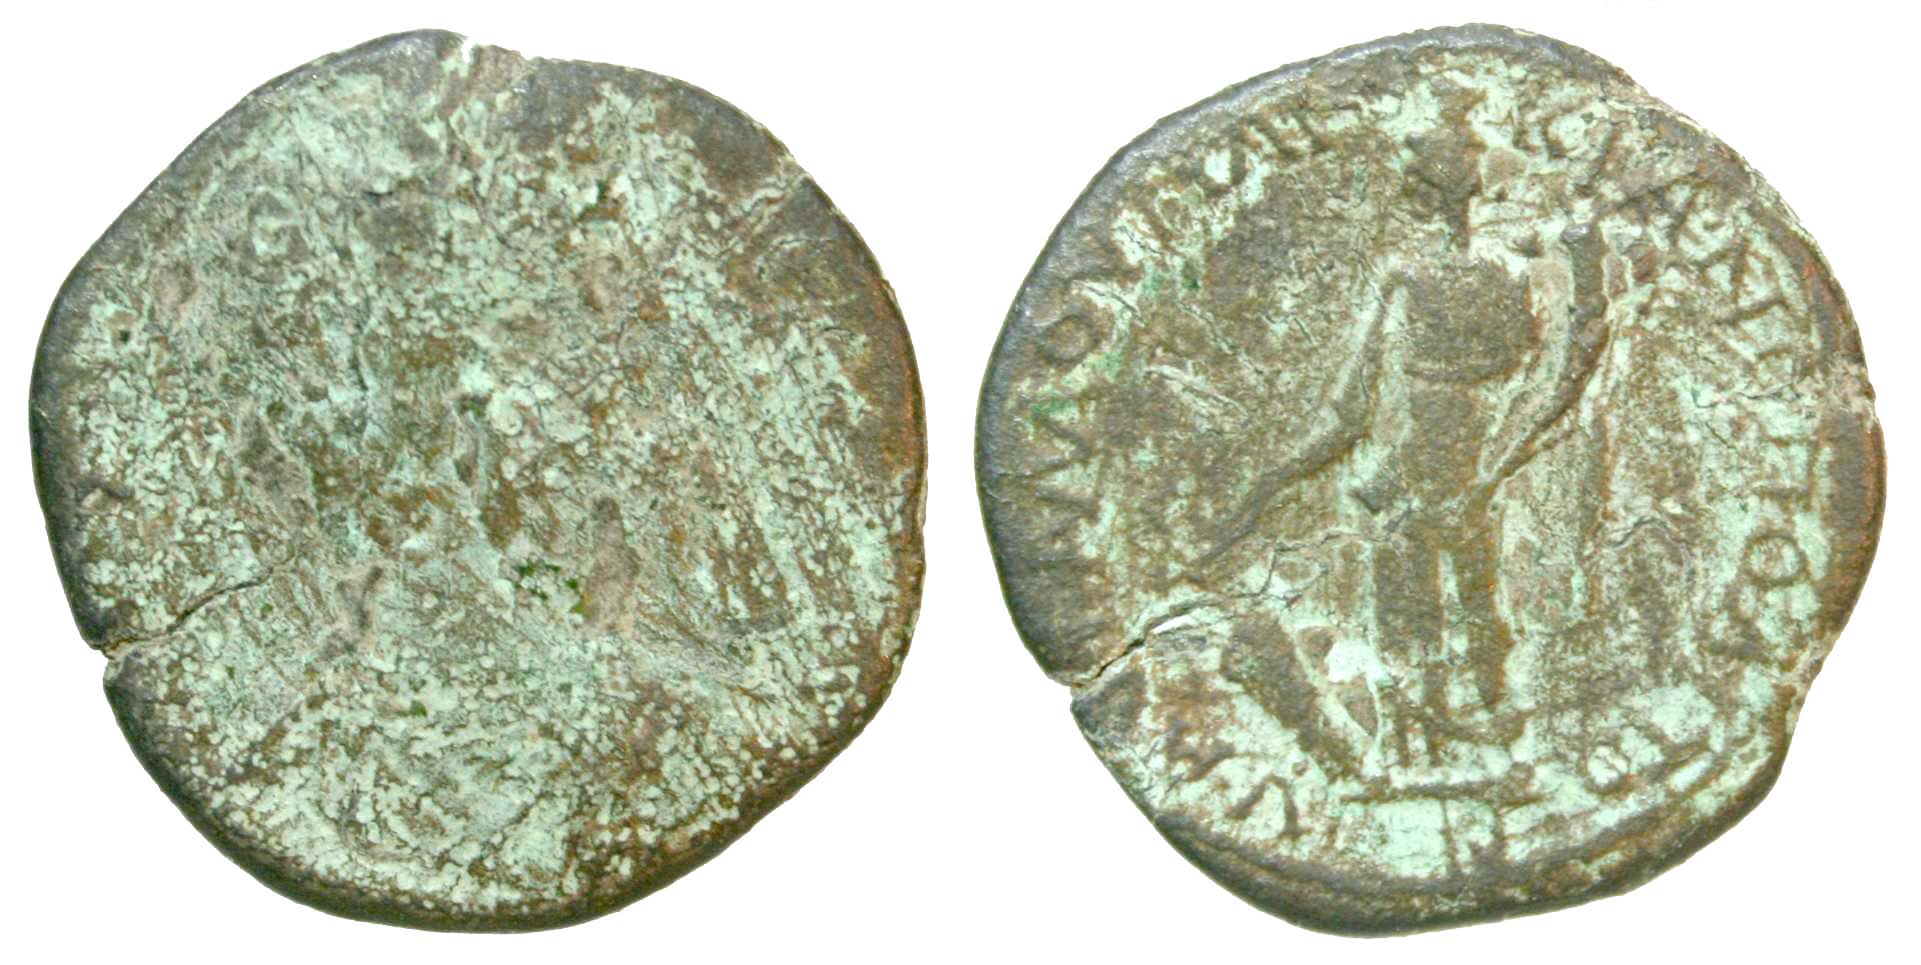 4815 Marcianopolis Moesia Inferior Septimius Severus AE cleaned